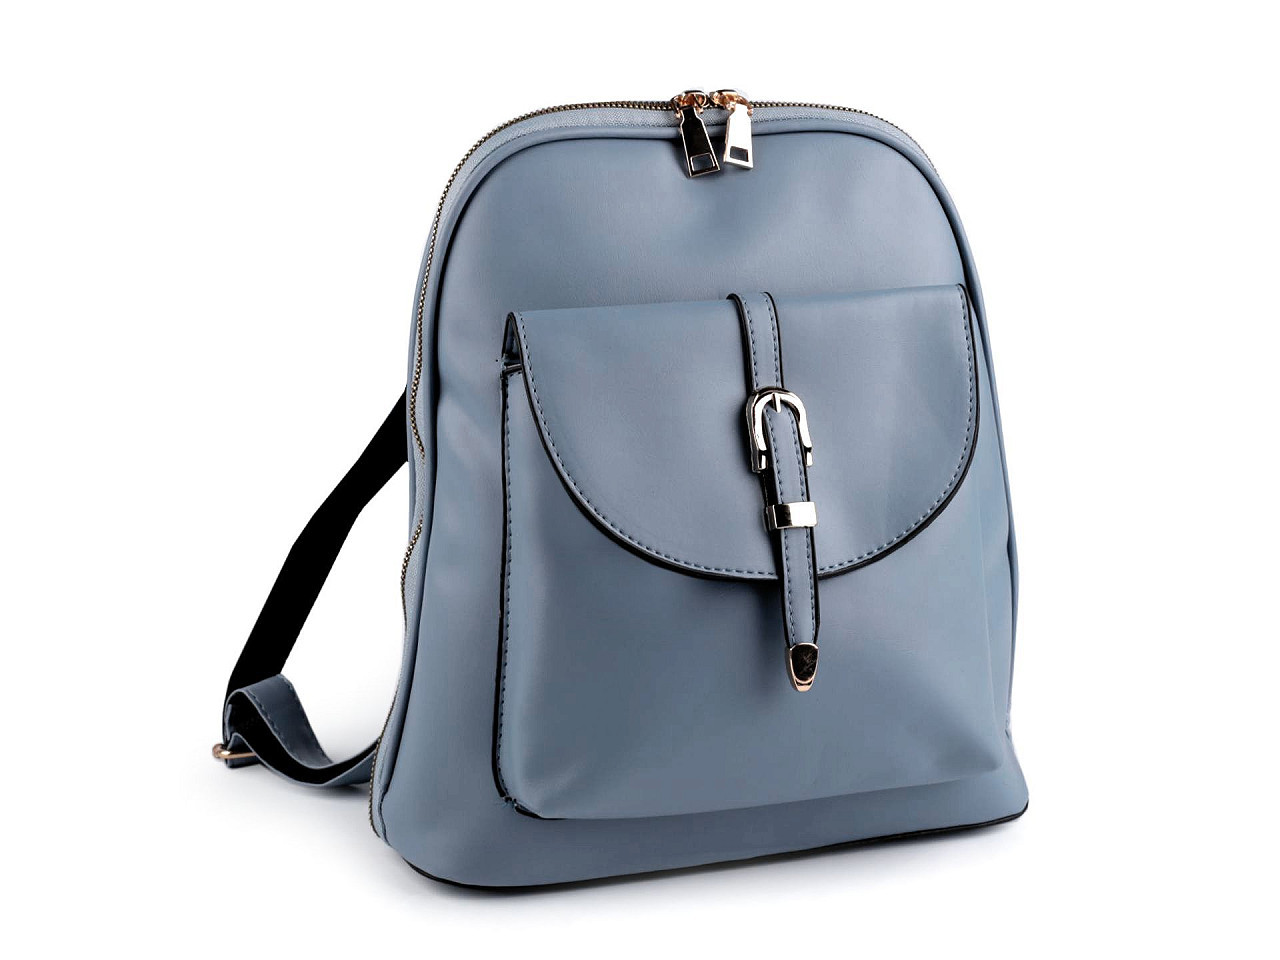 Dámský batoh / kabelka 2v1 27x31 cm, barva 3 modrá světlá